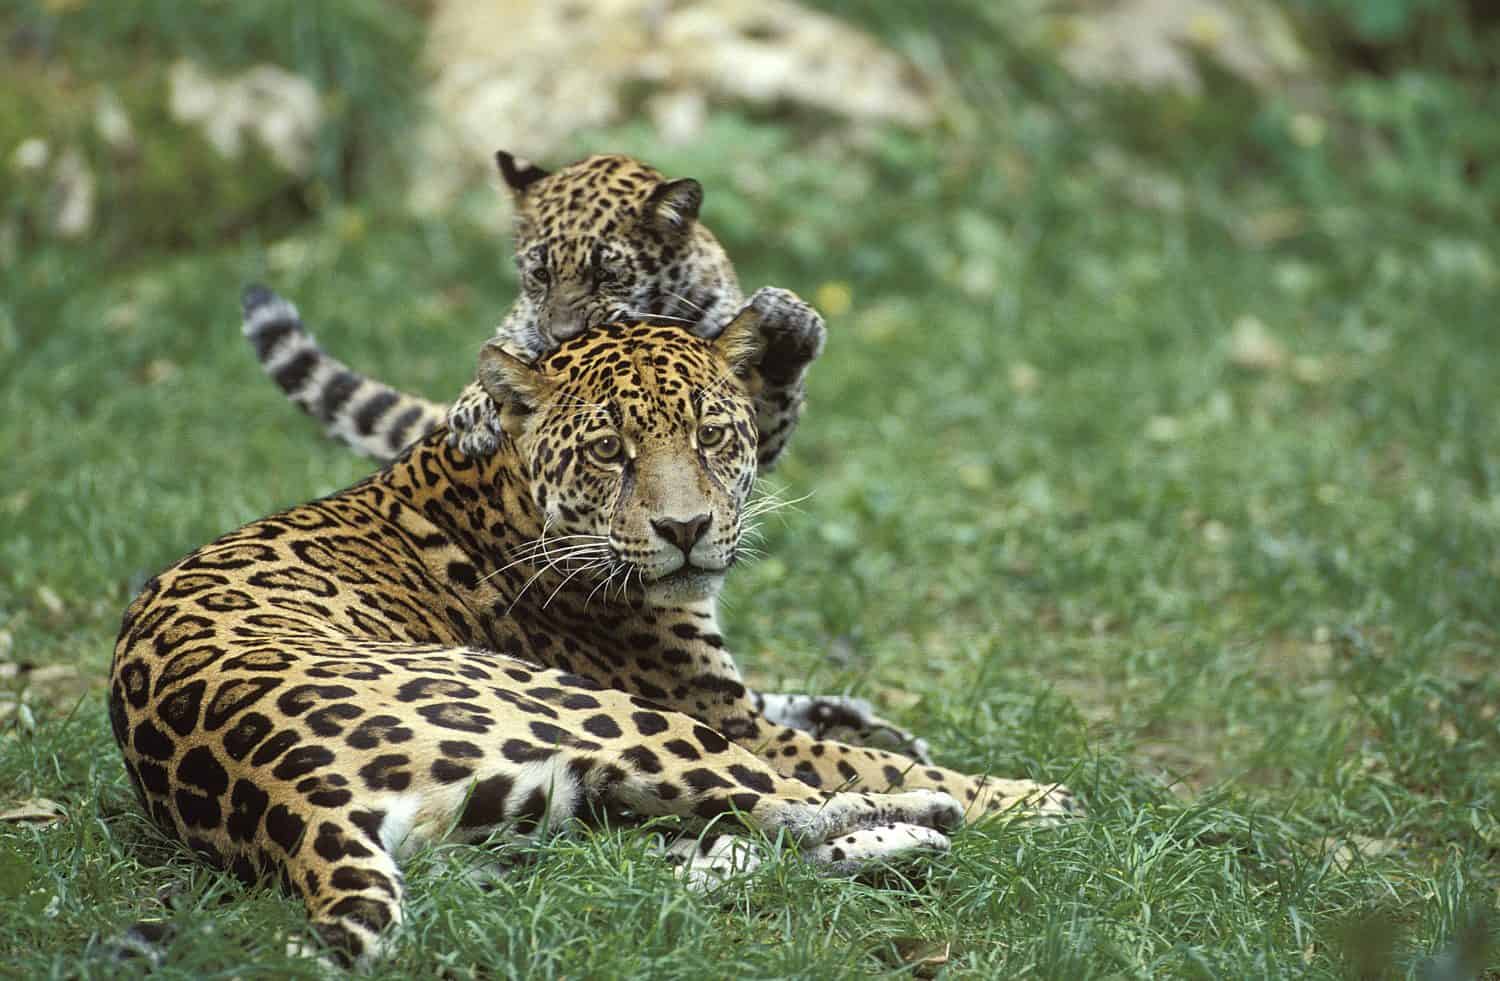 Jaguar, panthera onca, Mother and Cub playing  